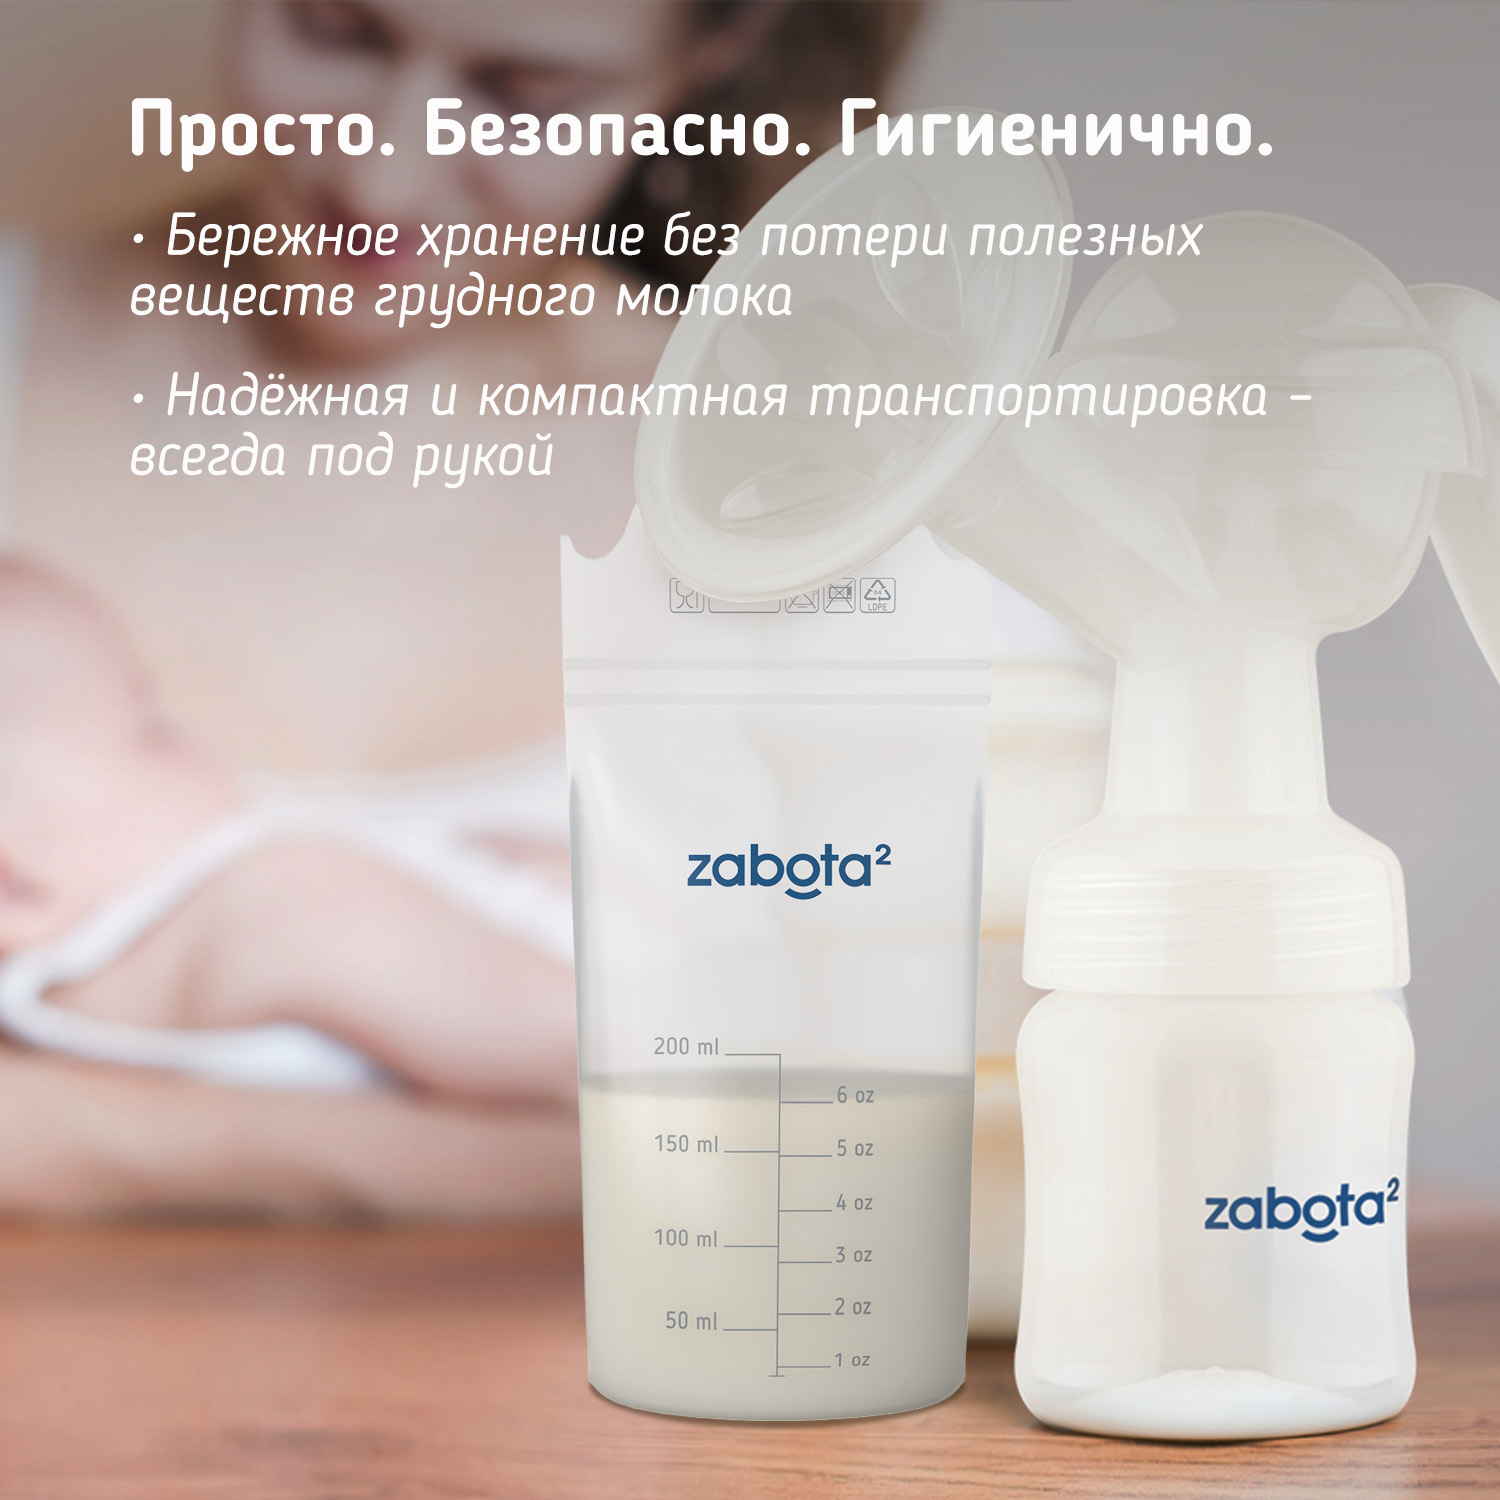 Пакеты для грудного молока Zabota2 200мл 15шт - фото 7